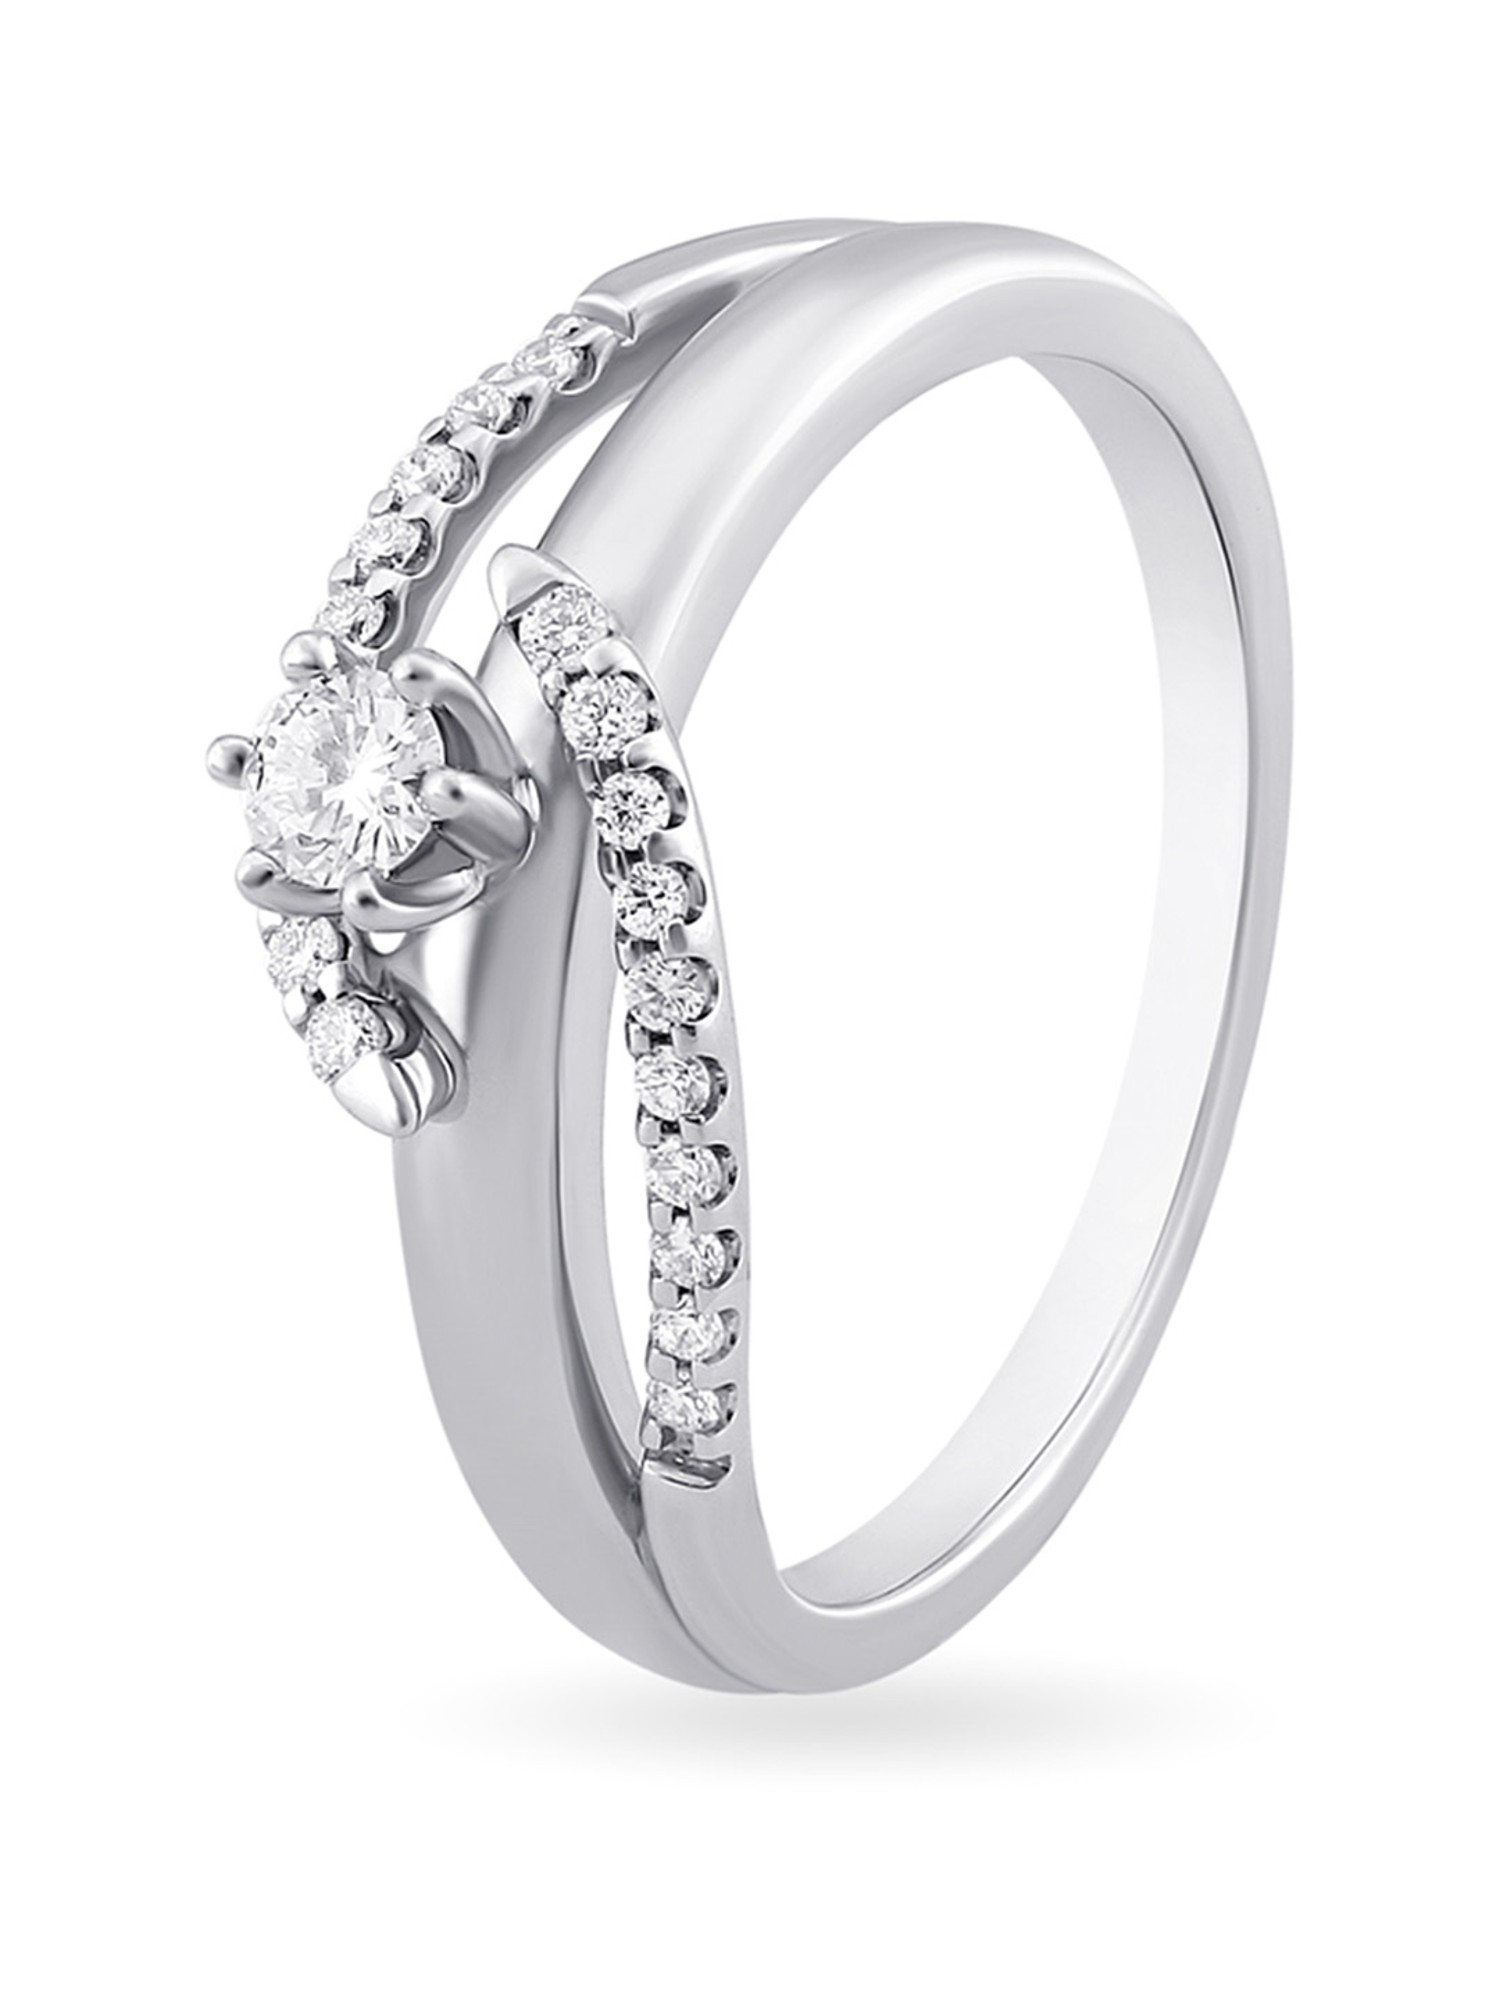 Diamond Engagement Ring Set, White Gold Flower Ring ADLR211S